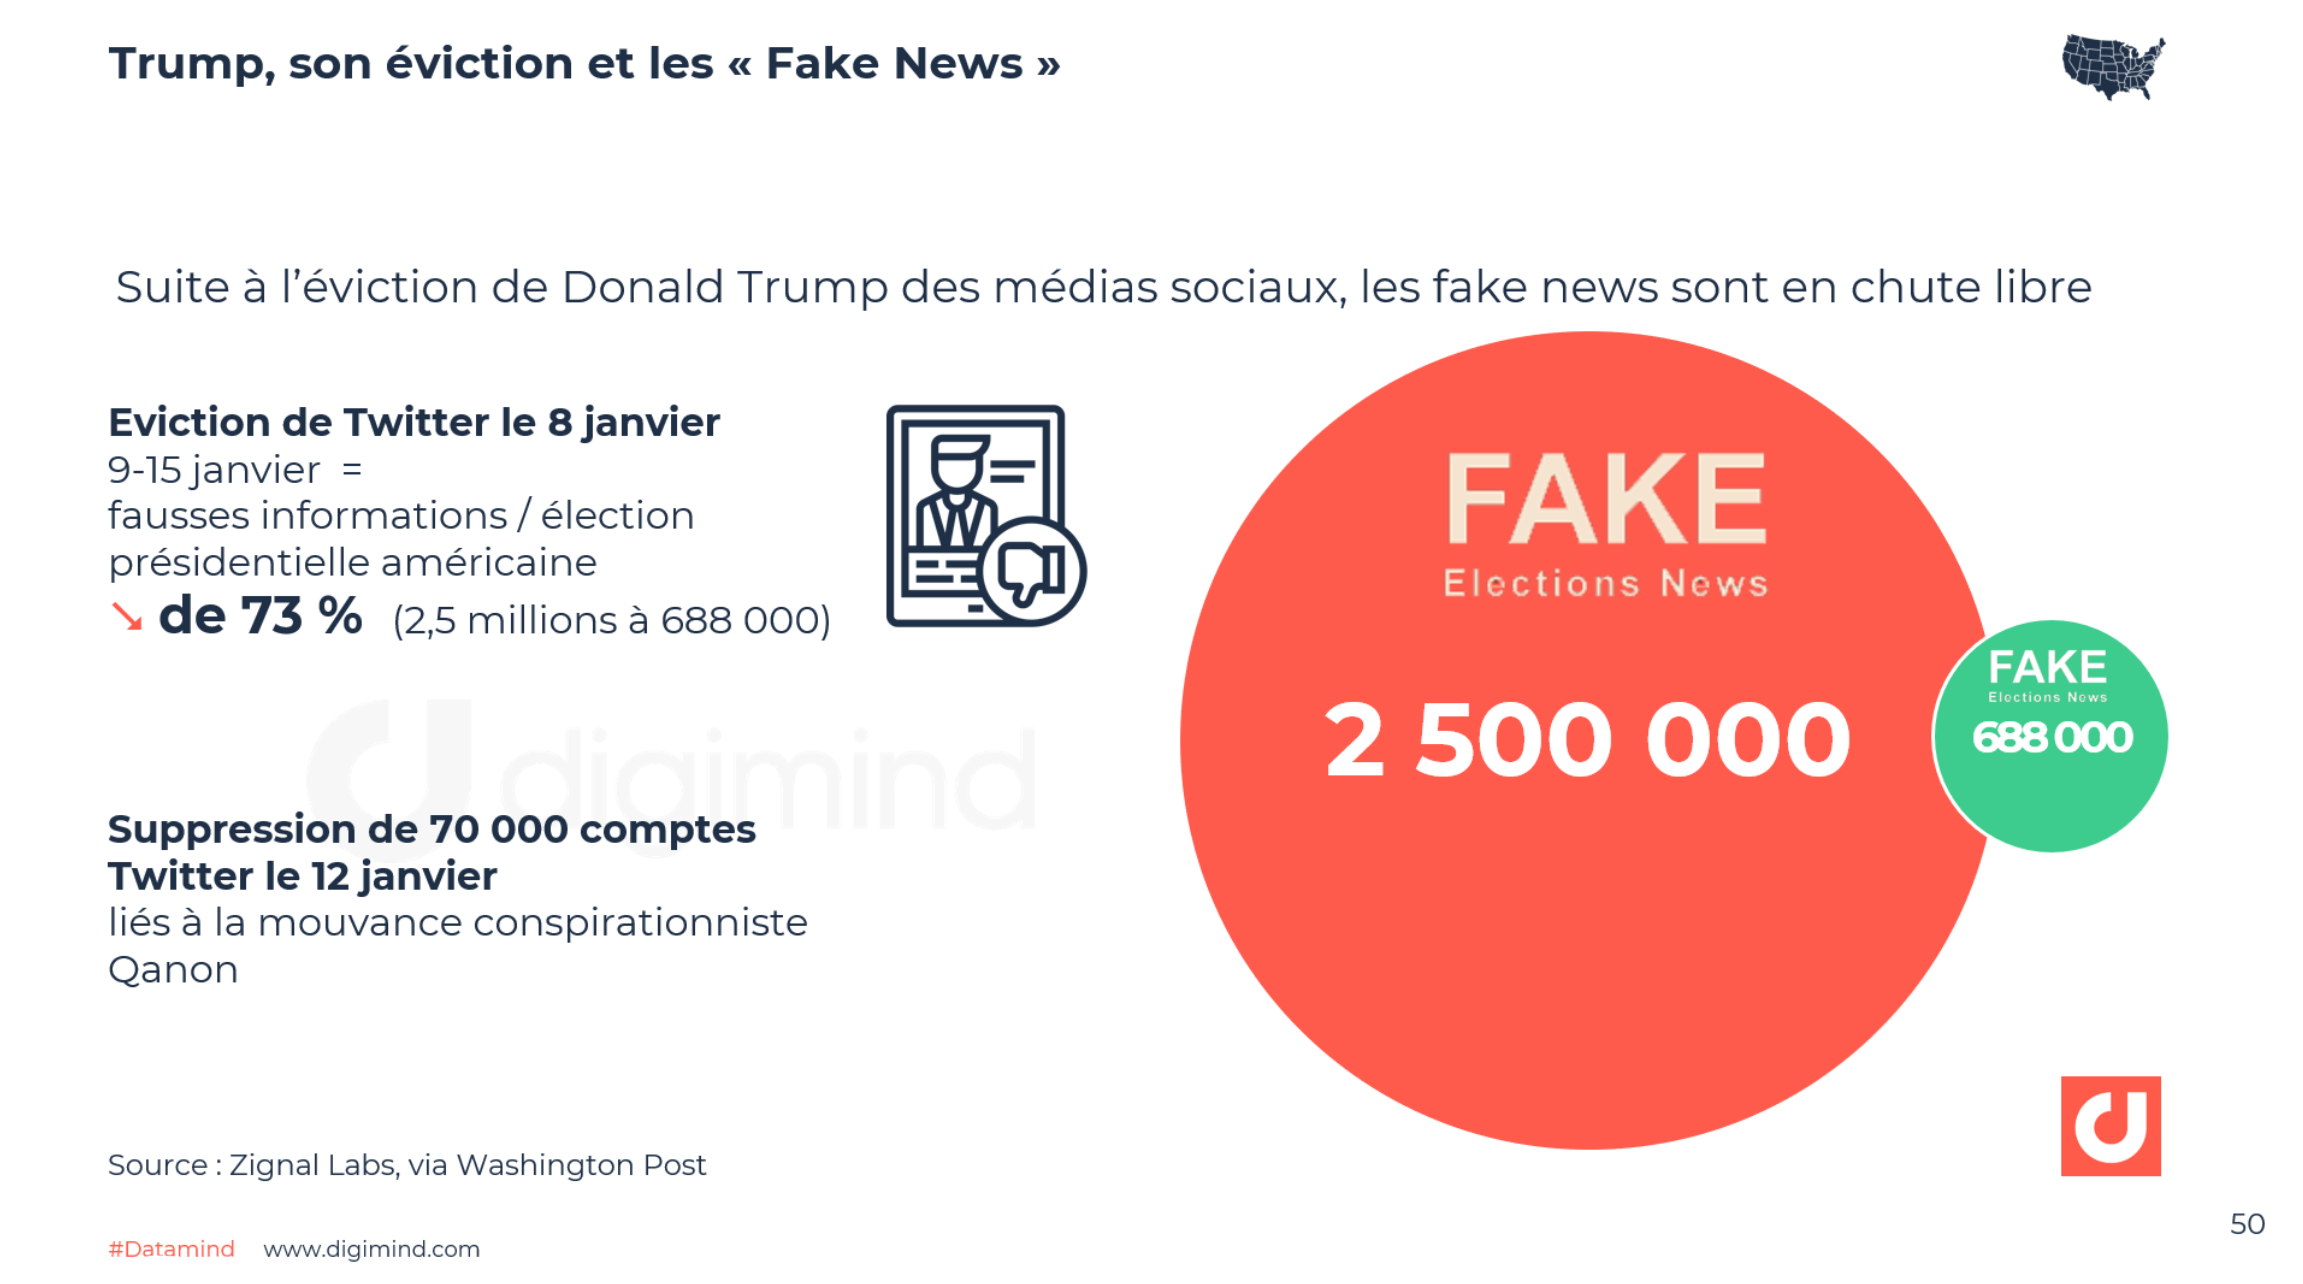 Trump, son éviction et les « Fake News » - Zignal Labs